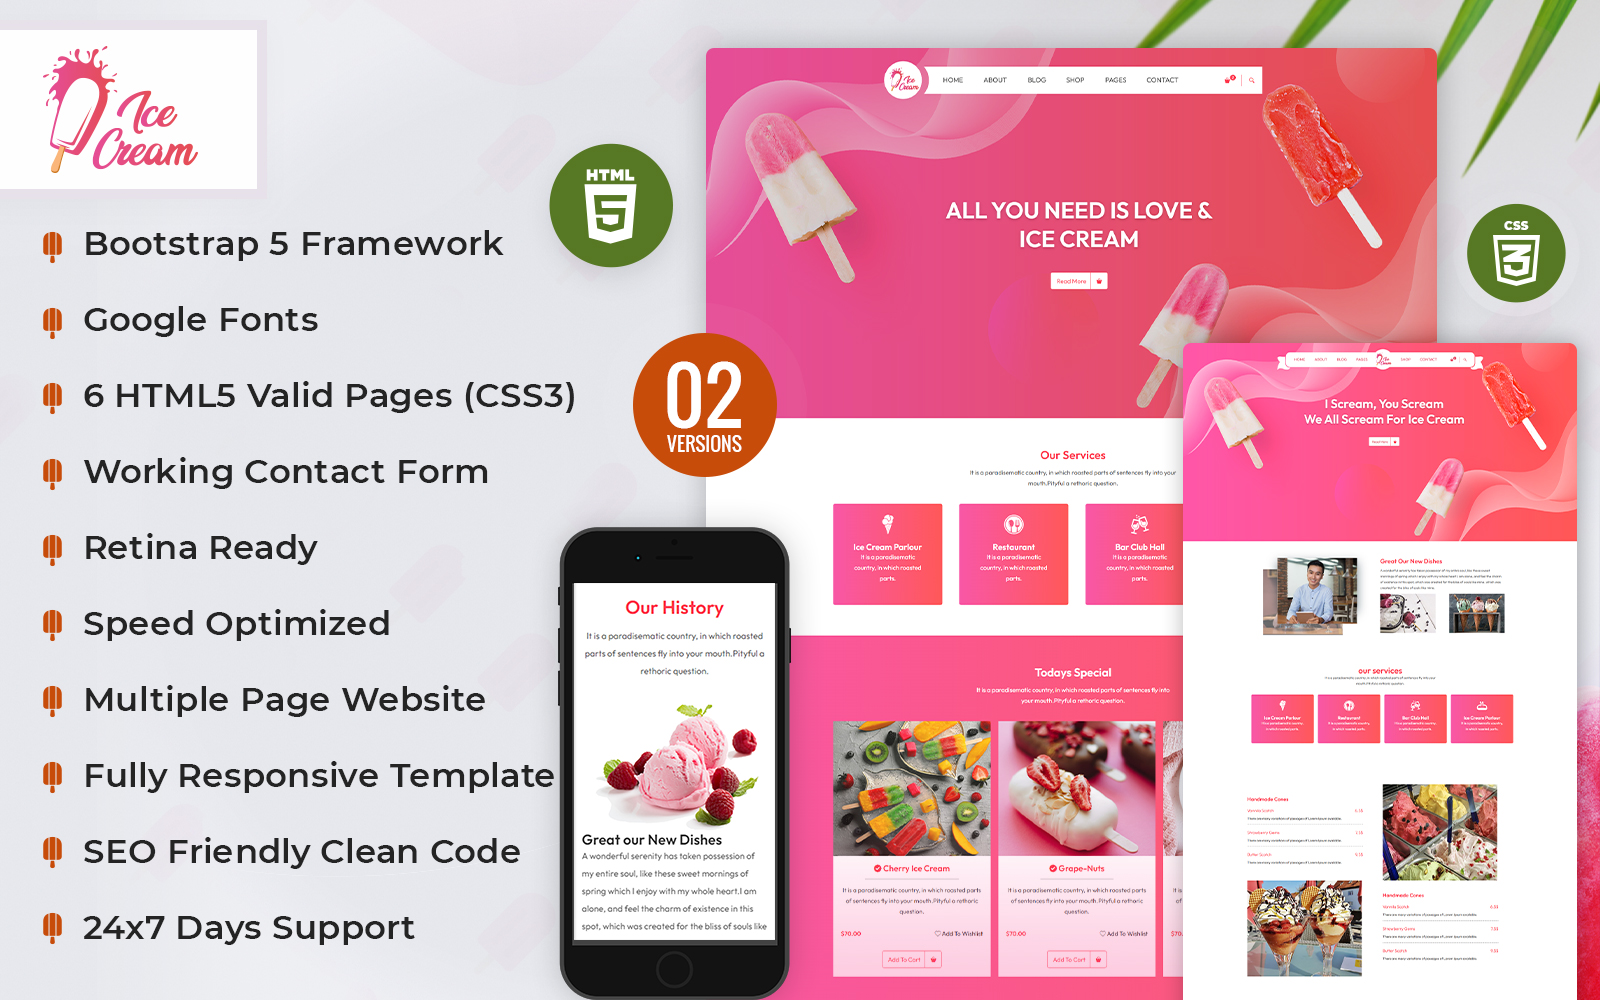 Creamy Ice Cream Shop HTML5 Website Template